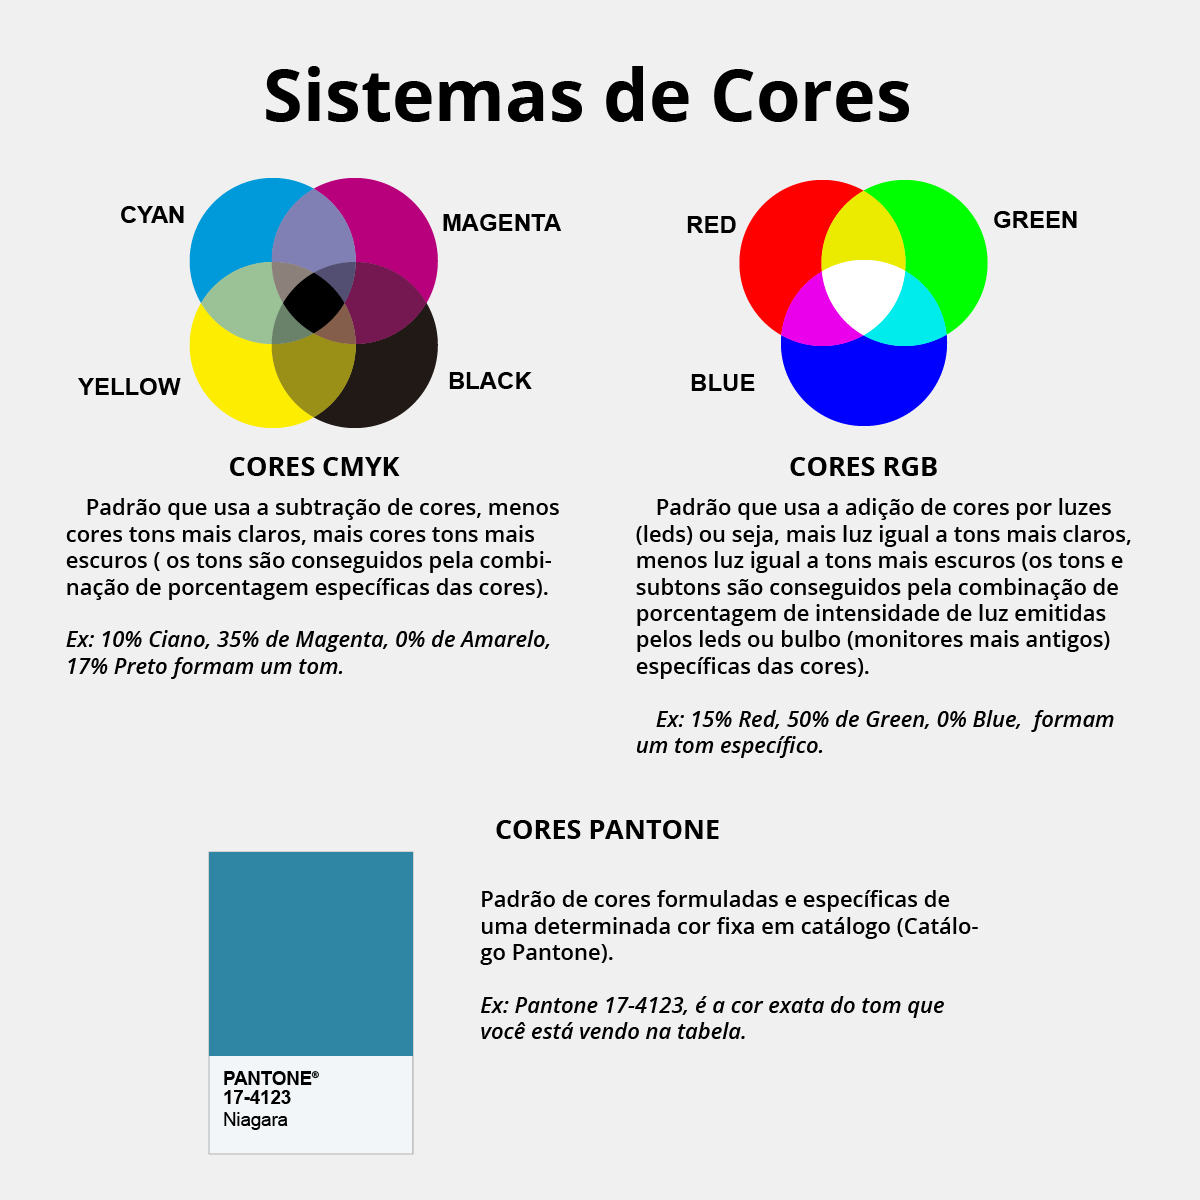 CMYK e RGB: quais as diferenças entre cada padrão de cores?